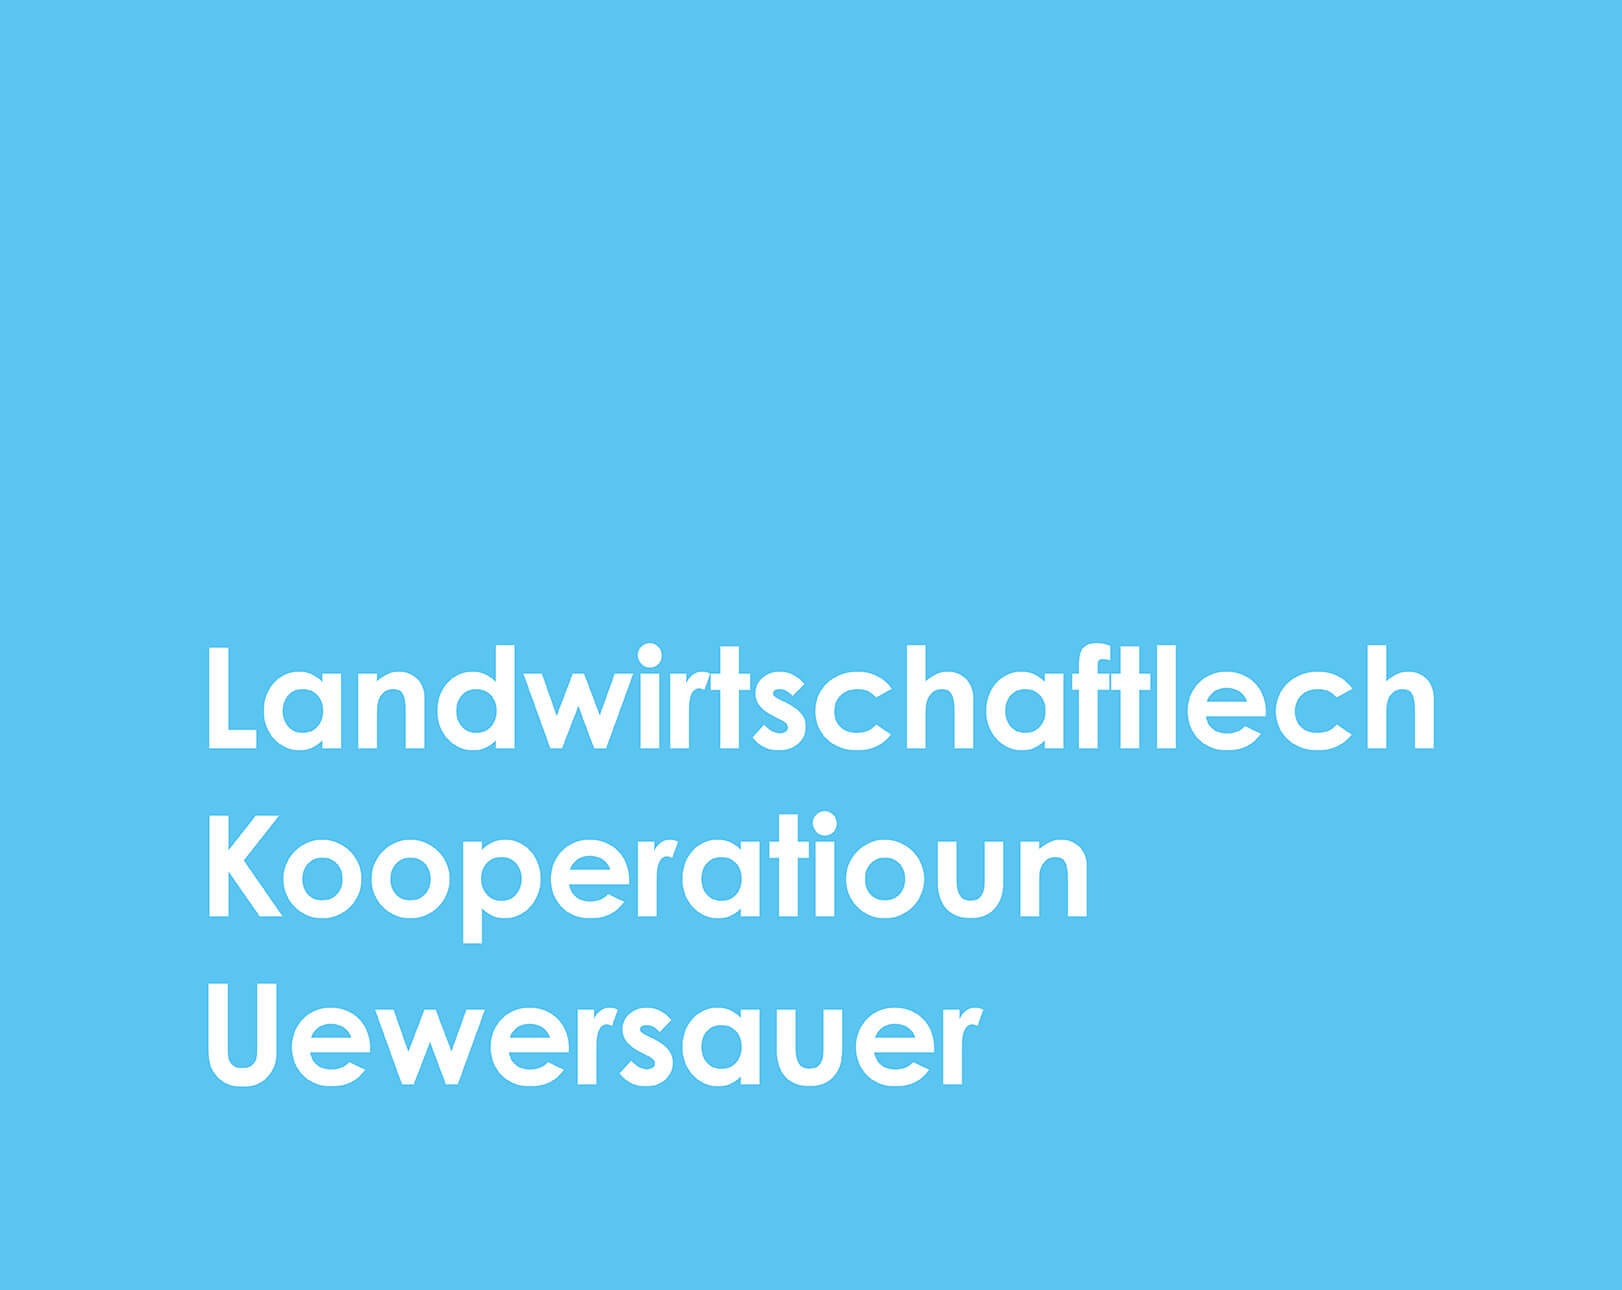 Nom complet de la LAKU sur fond bleu : Landwirtschaftlech Kooperatioun Uewersauer